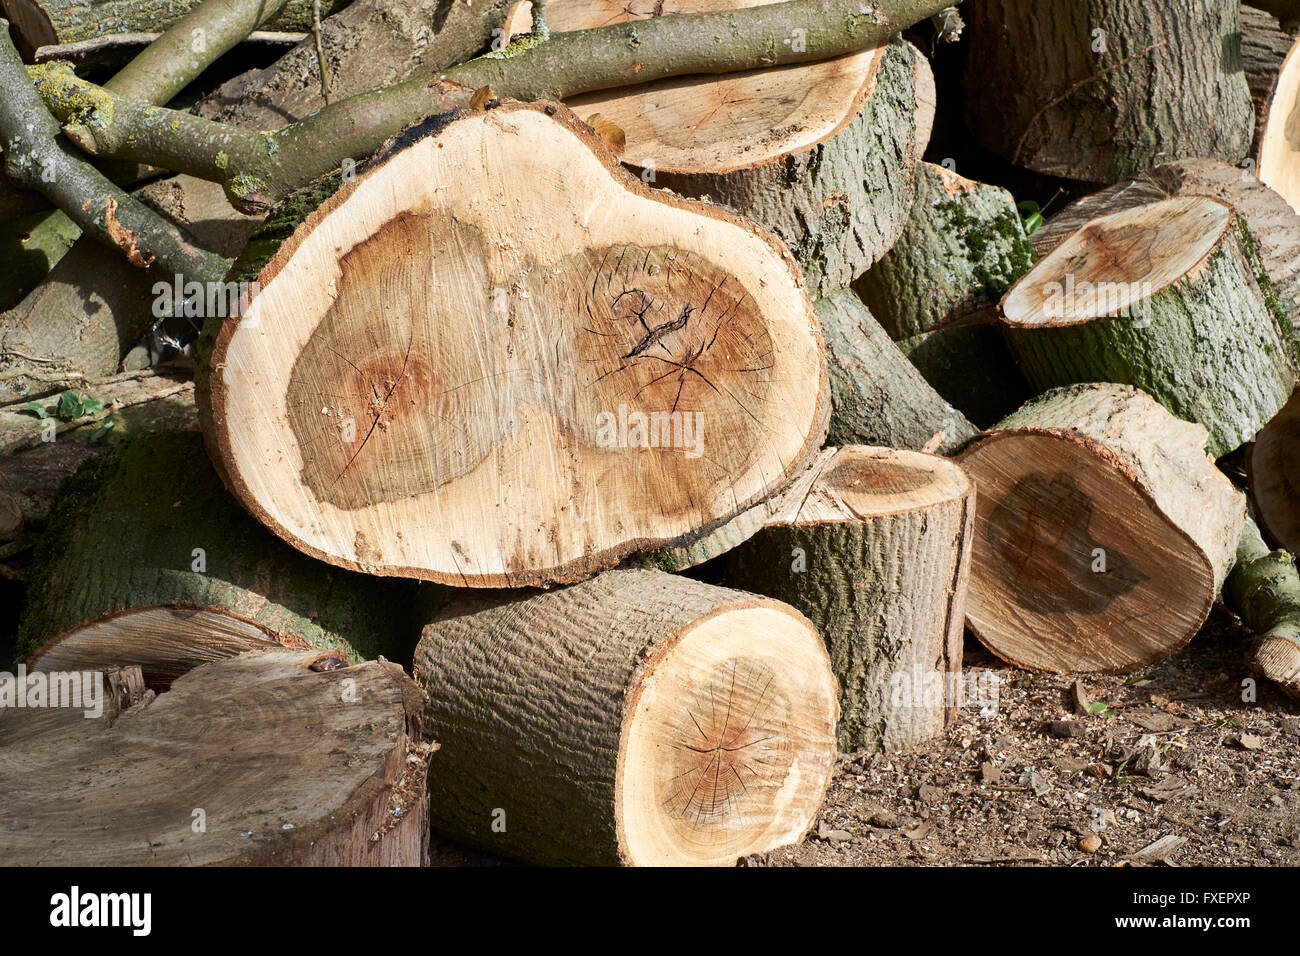 Ein Haufen Holzscheite von Erhaltungs- und Lebensraum arbeitet auf landwirtschaftlichen Flächen. Bedfordshire, UK. Stockfoto